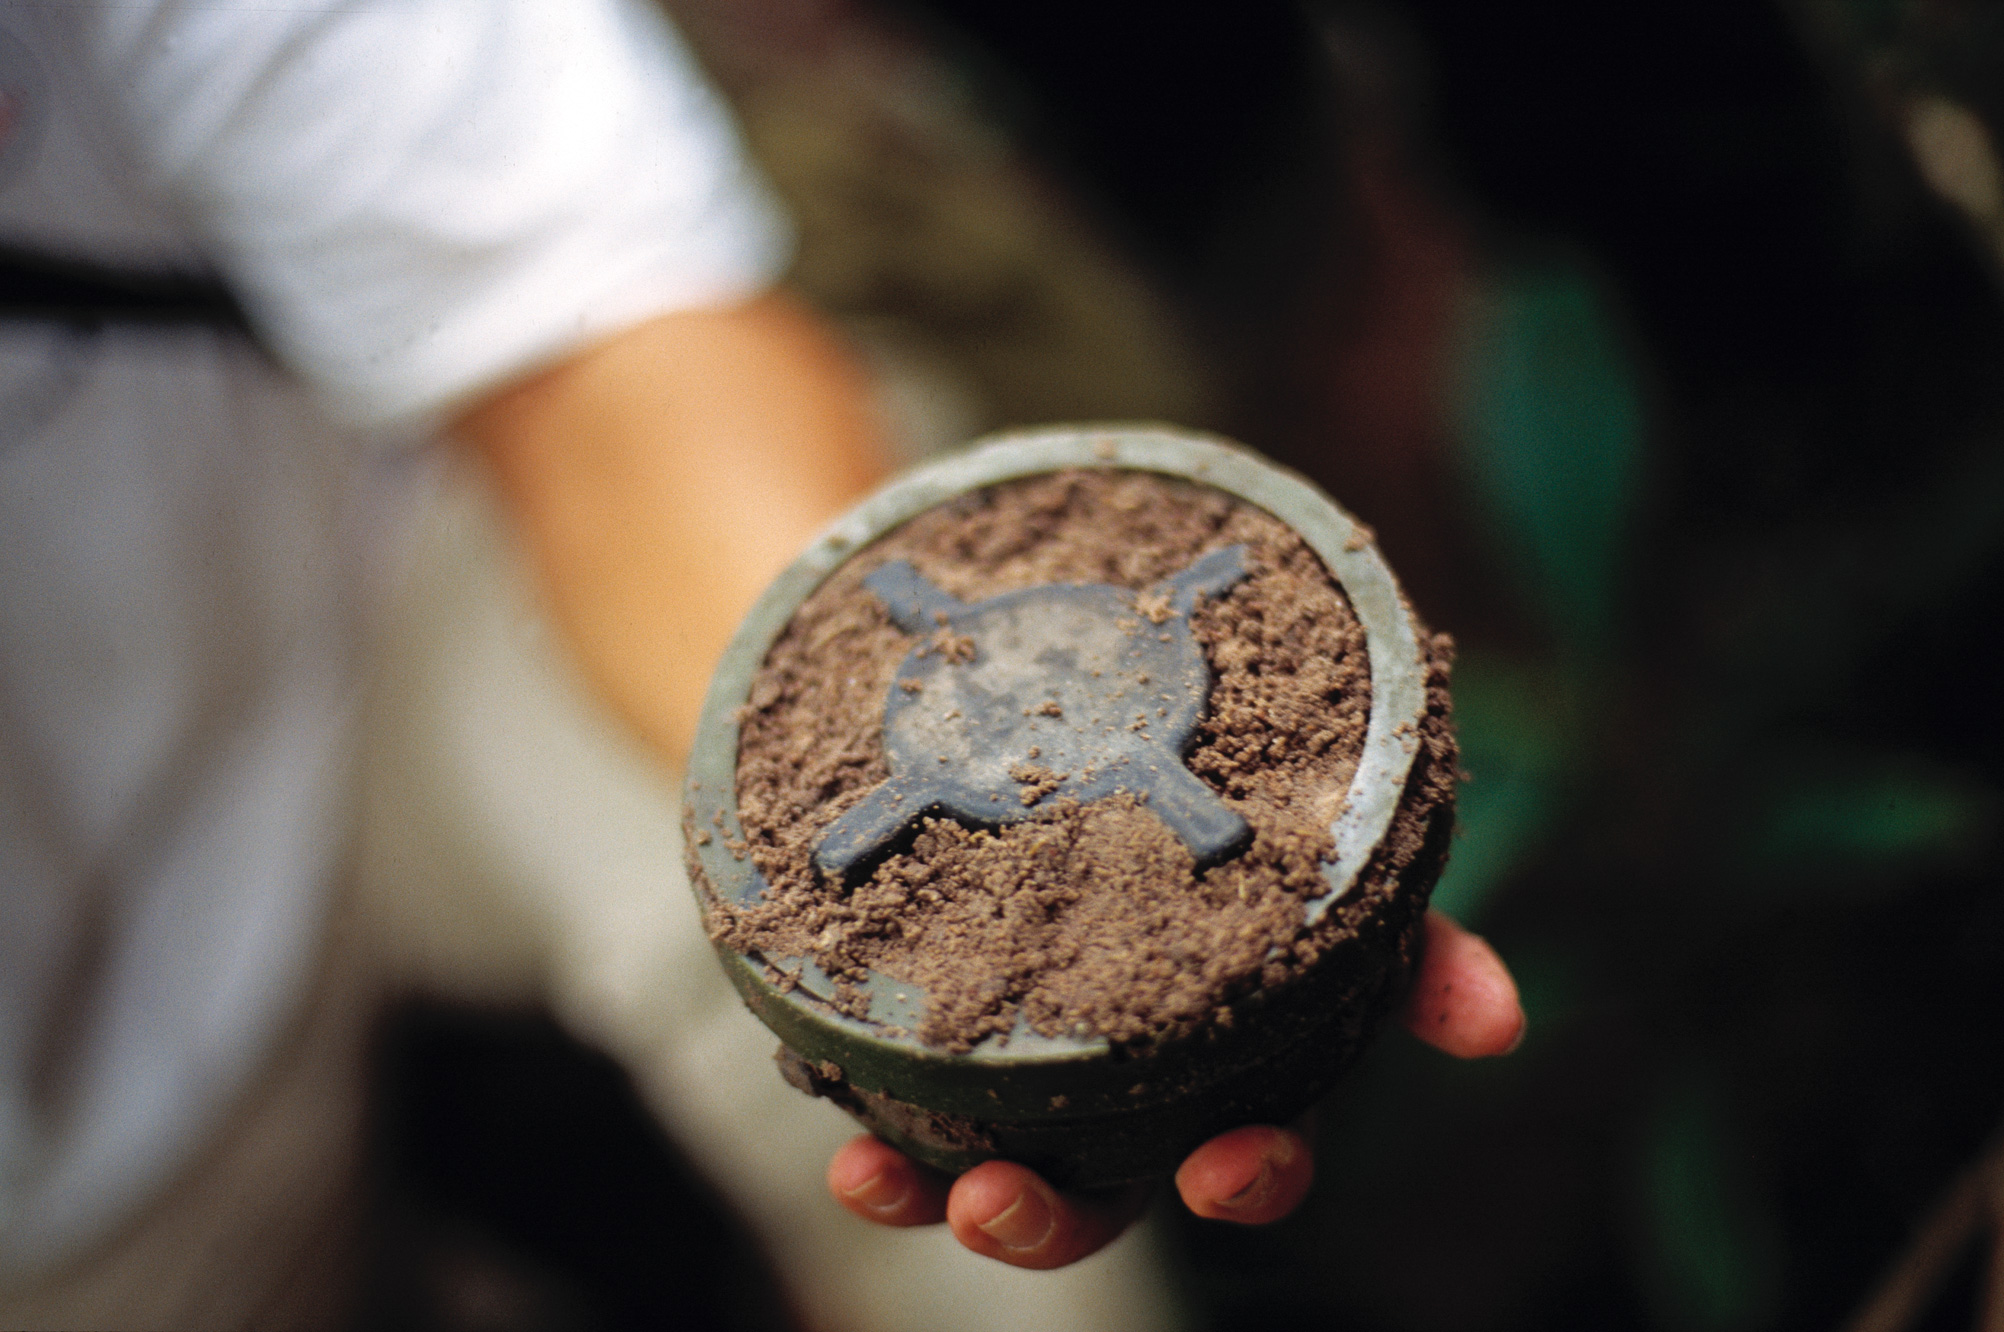 En hånd holder en oppgravd landmine.